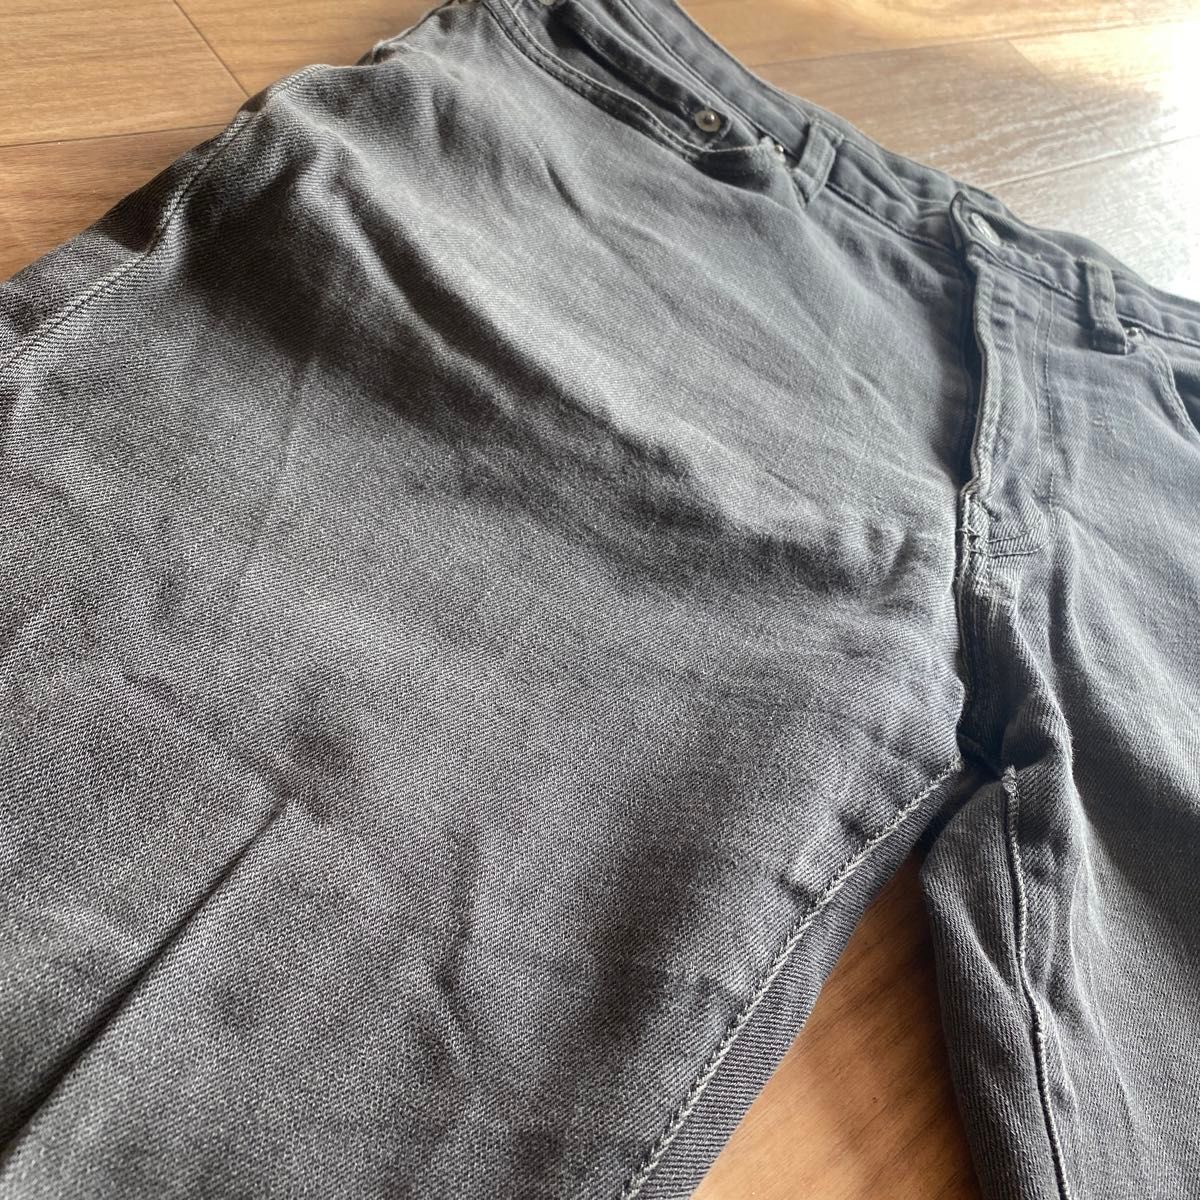 【即購入可】メンズ GU ジーユー ジーパン デニム パンツ ズボン 31インチ ブラック 黒 ストレート 伸縮 L